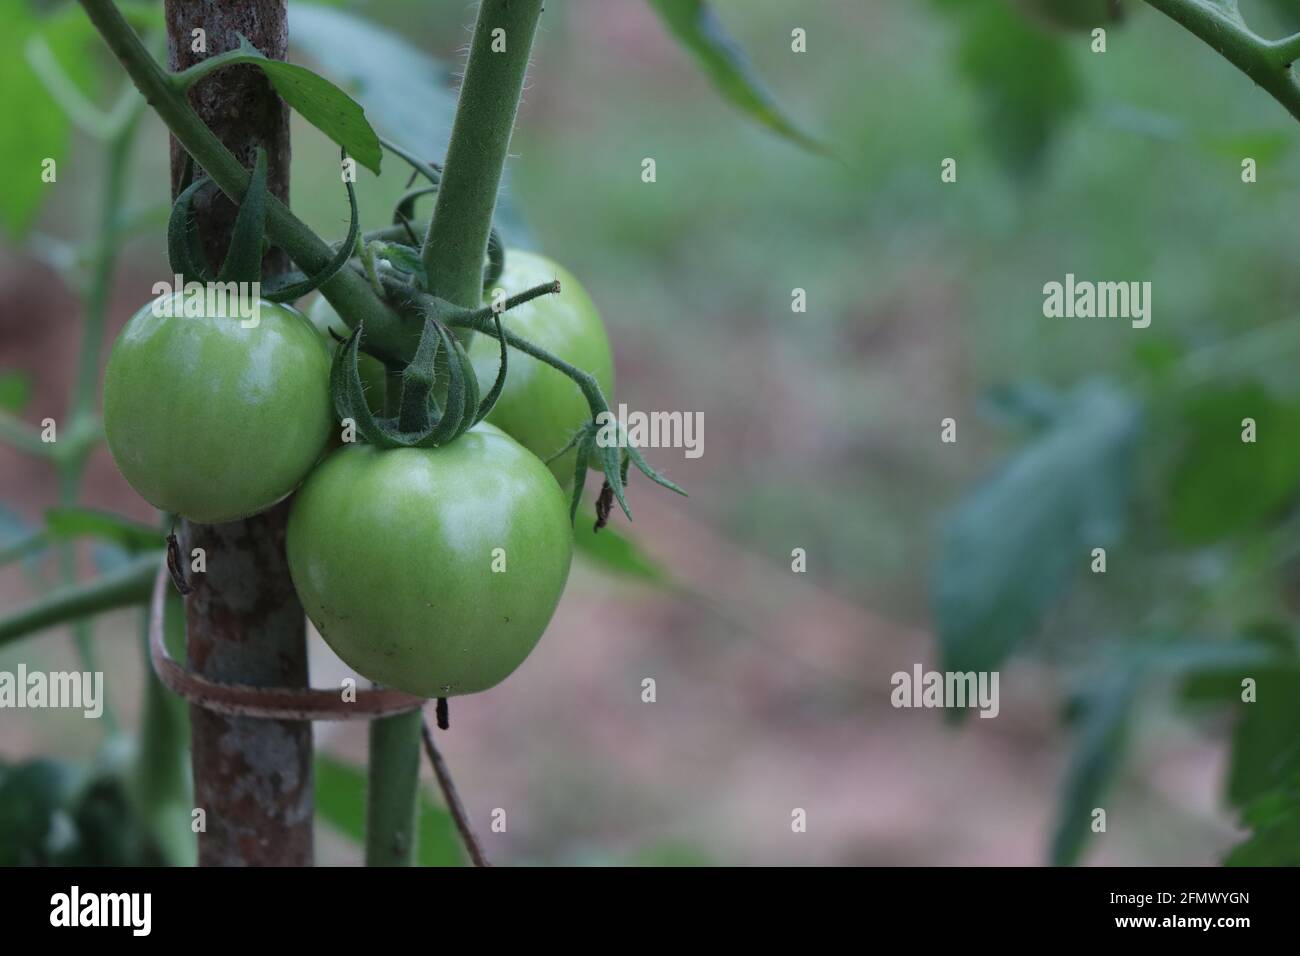 Plante de tomate biologique verte fraîche avec récolte. Plante de tomate liée au support avec un espace pour la copie de texte Banque D'Images